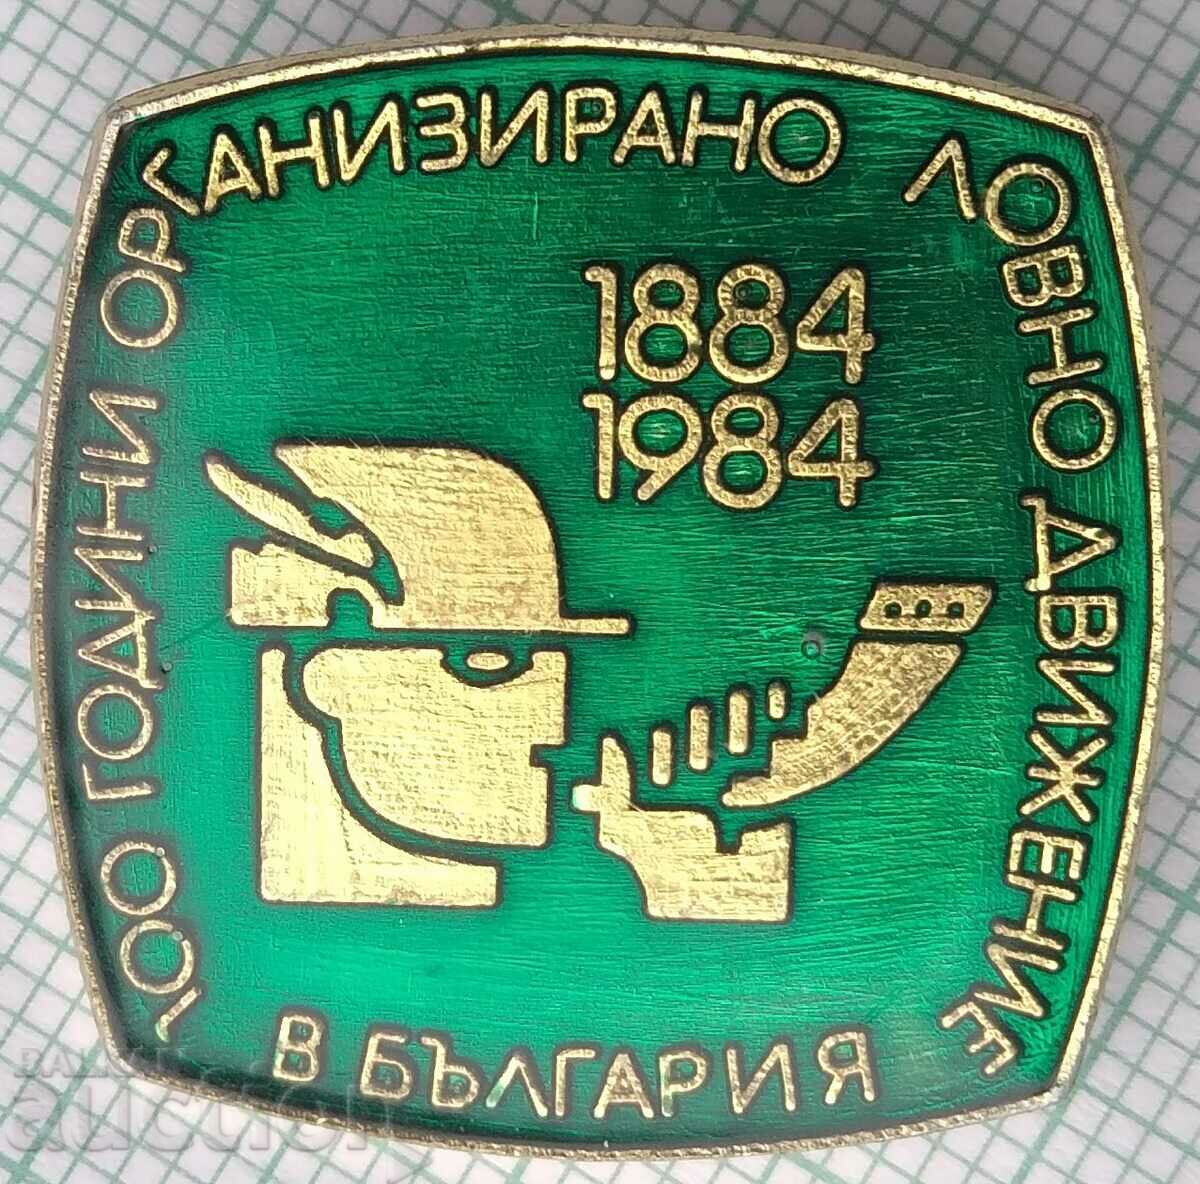 Σήμα 15711 - Κυνηγετικό κίνημα 100 γραμμαρίων στη Βουλγαρία 1984 BLRS